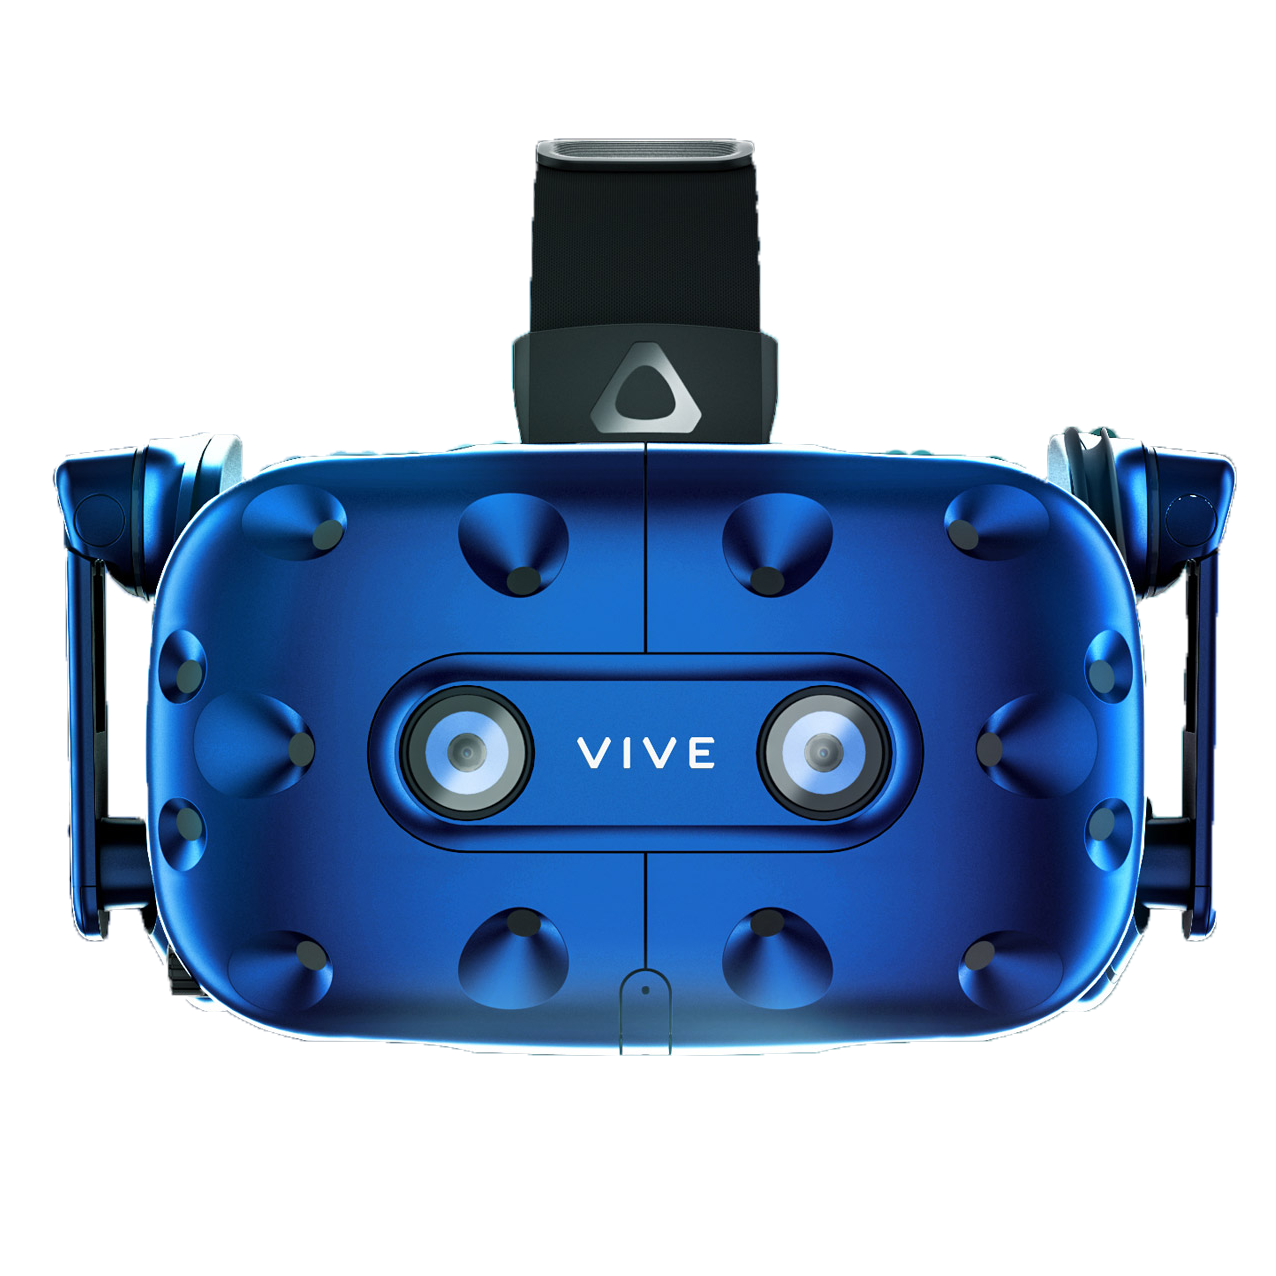 Очки виртуальной реальности HTC Vive Pro Headset